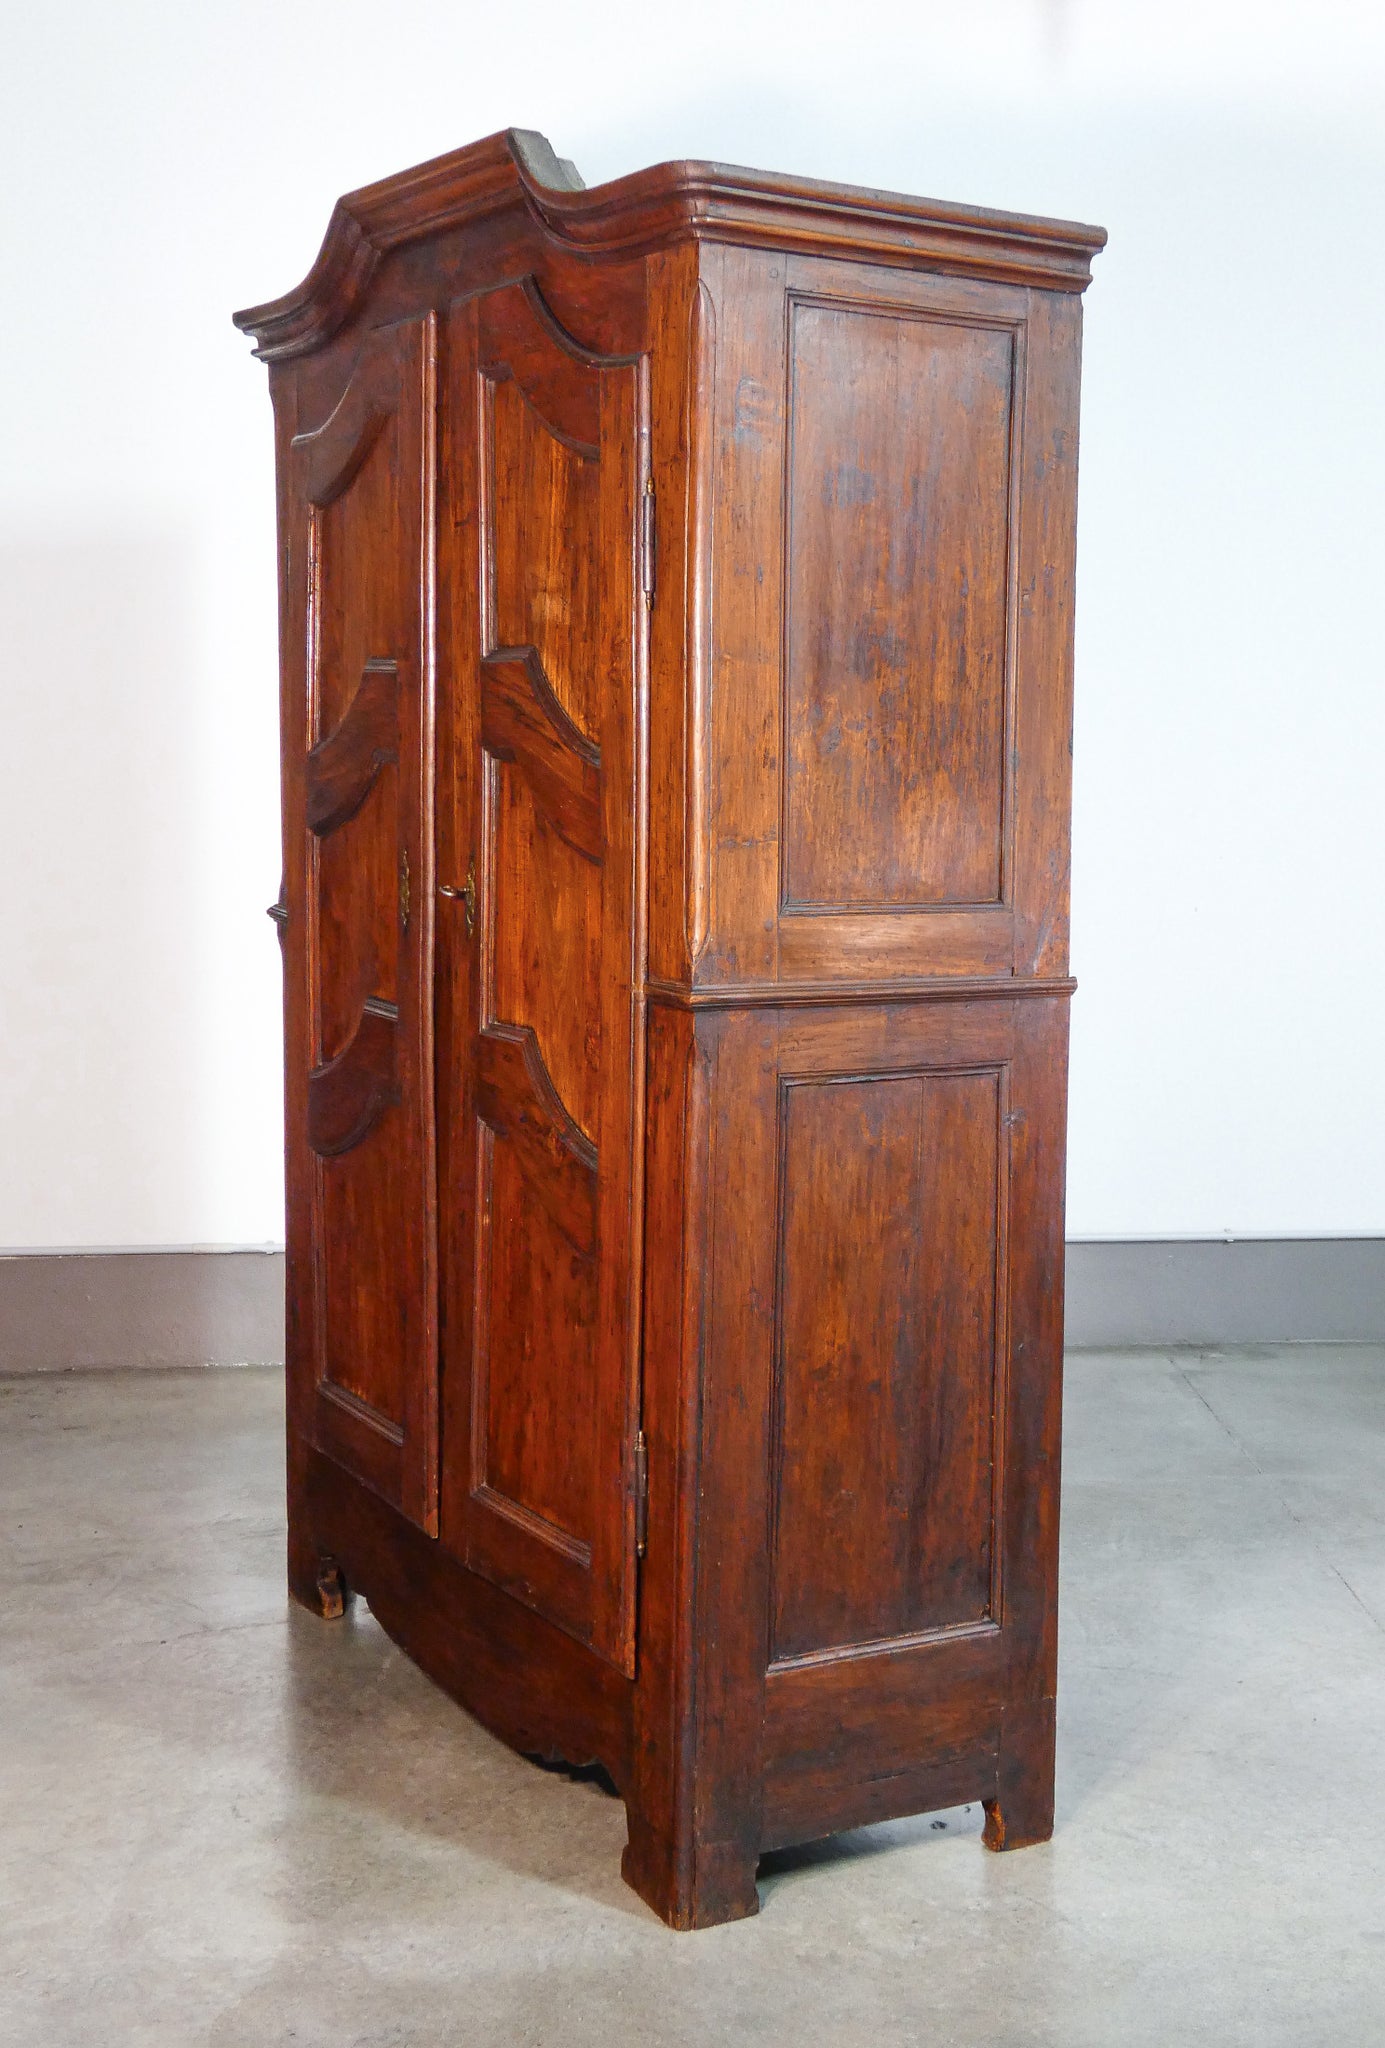 armadio carlo x legno pioppo epoca 1800 guardaroba doppio corpo antico